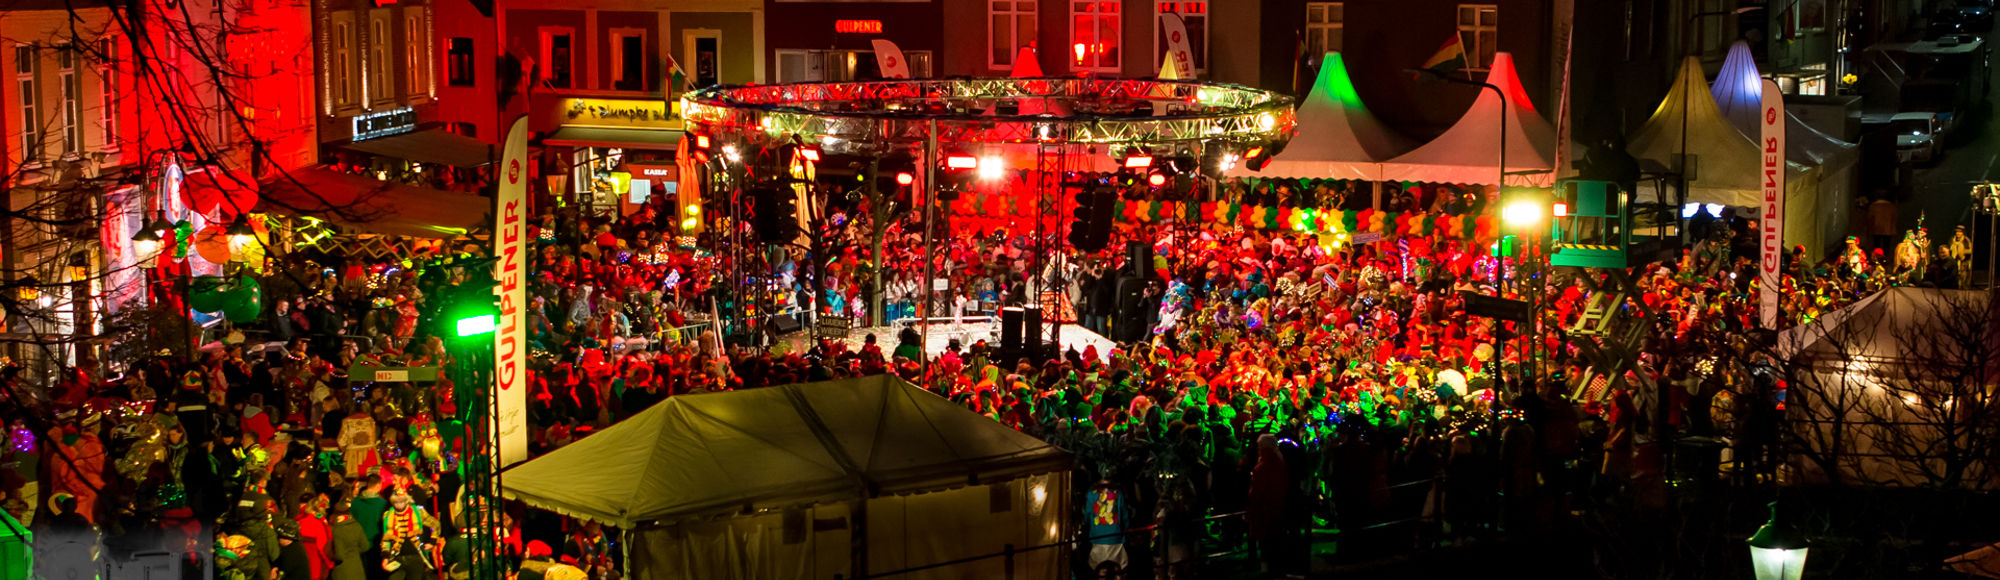 Carnaval Groeëte Gulpener Vastelaoves Finale met rood, geel en groene kleuren